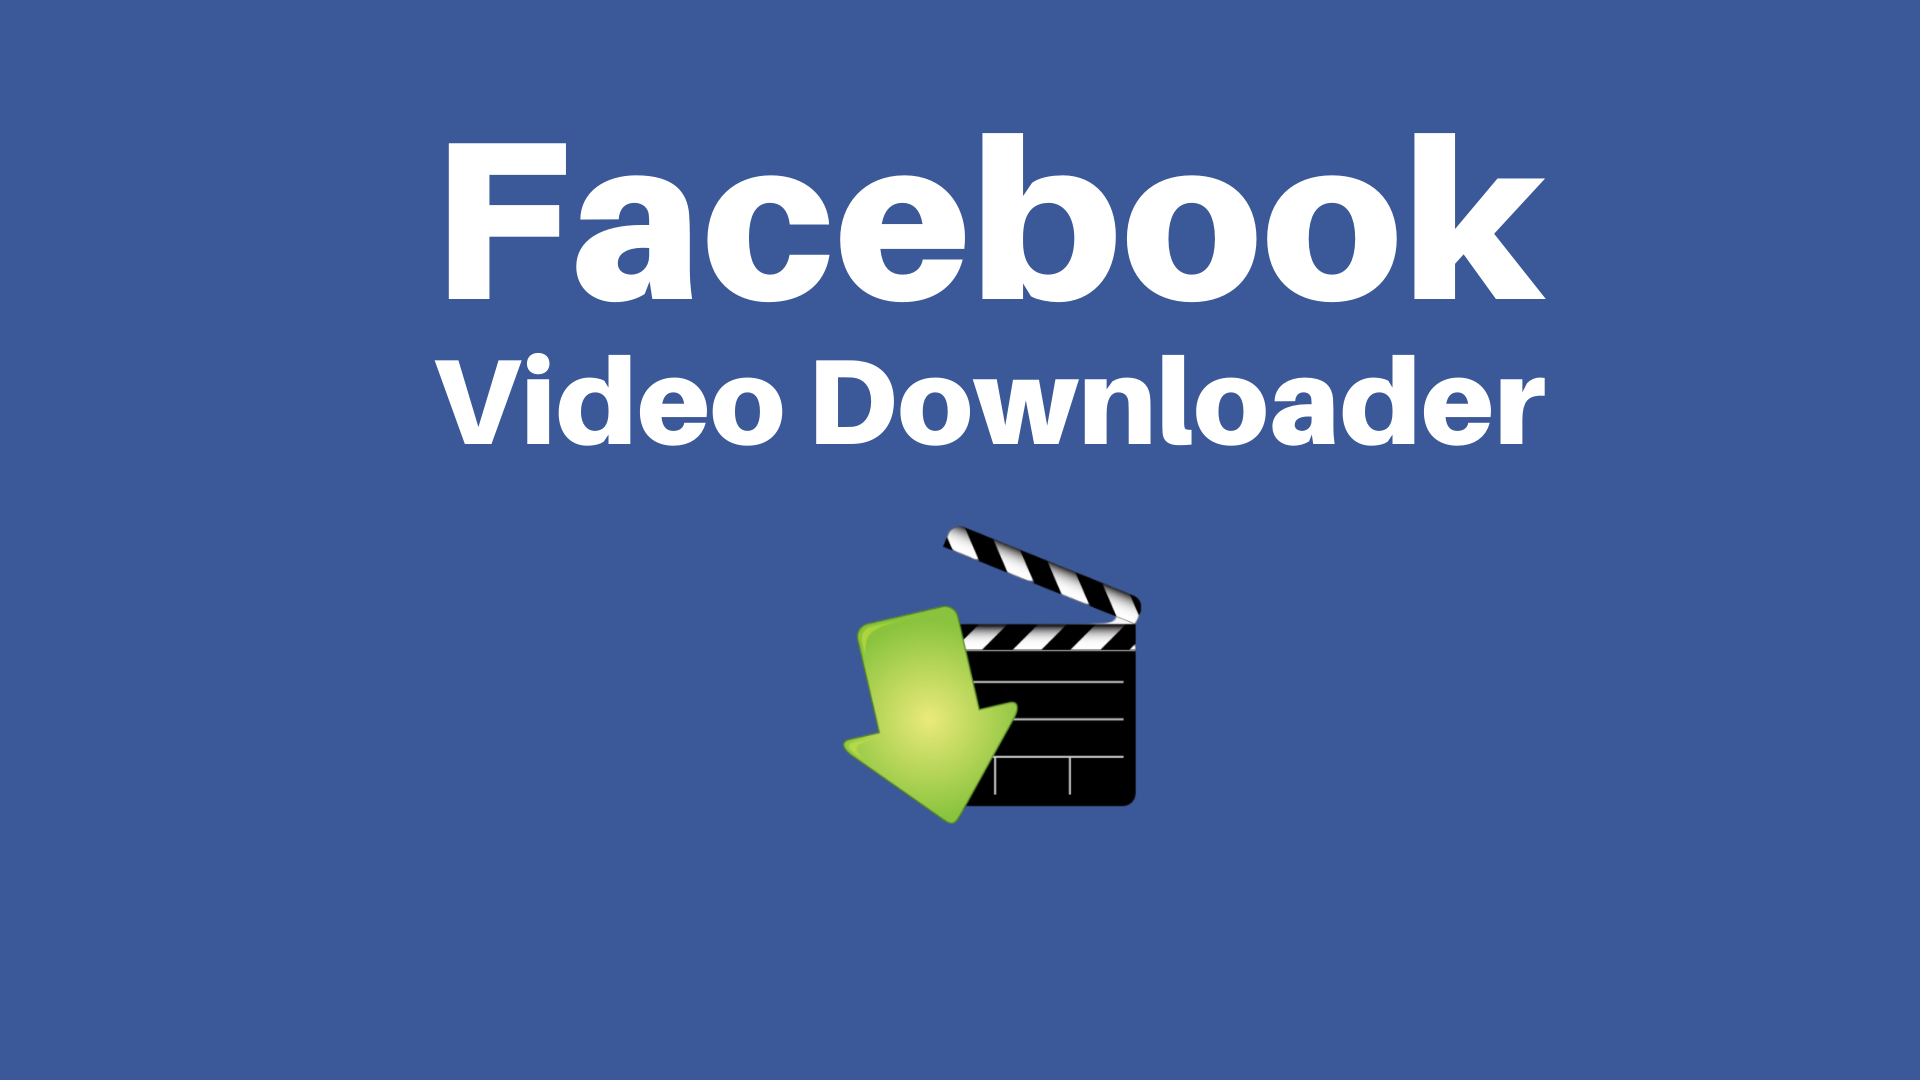 ¿Cómo descargar videos de Facebook?